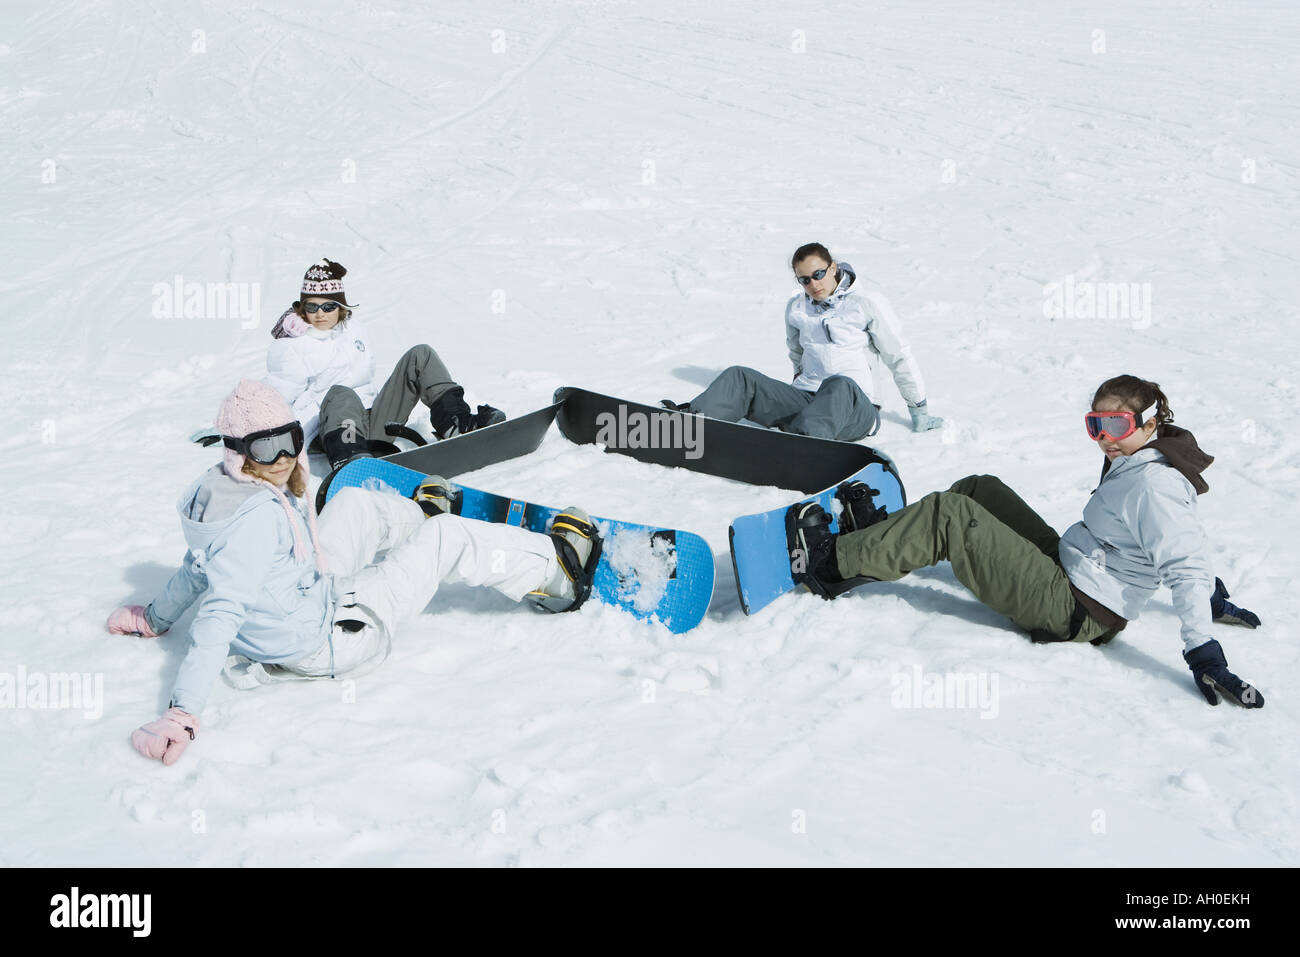 Cuatro jóvenes snowboarders, sentados en el suelo en una plaza, mirando a la cámara Foto de stock